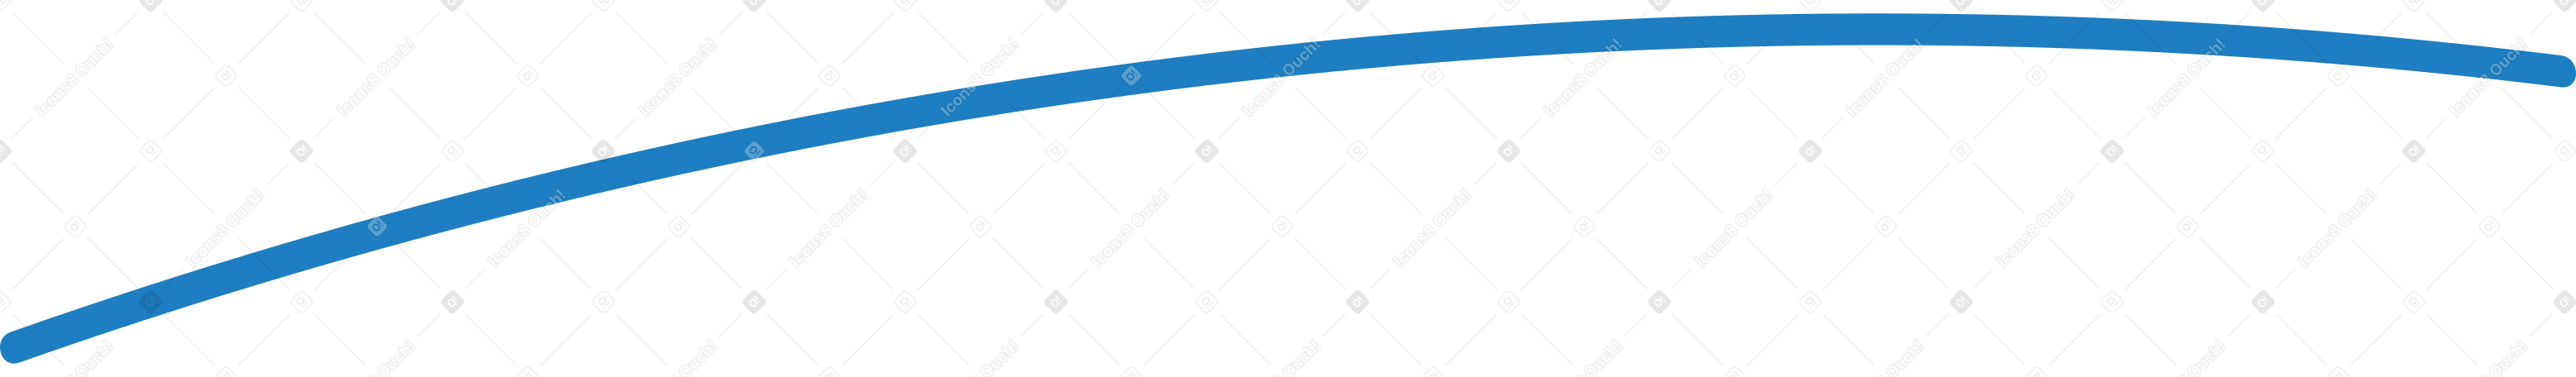 blue line background Illustration in PNG, SVG